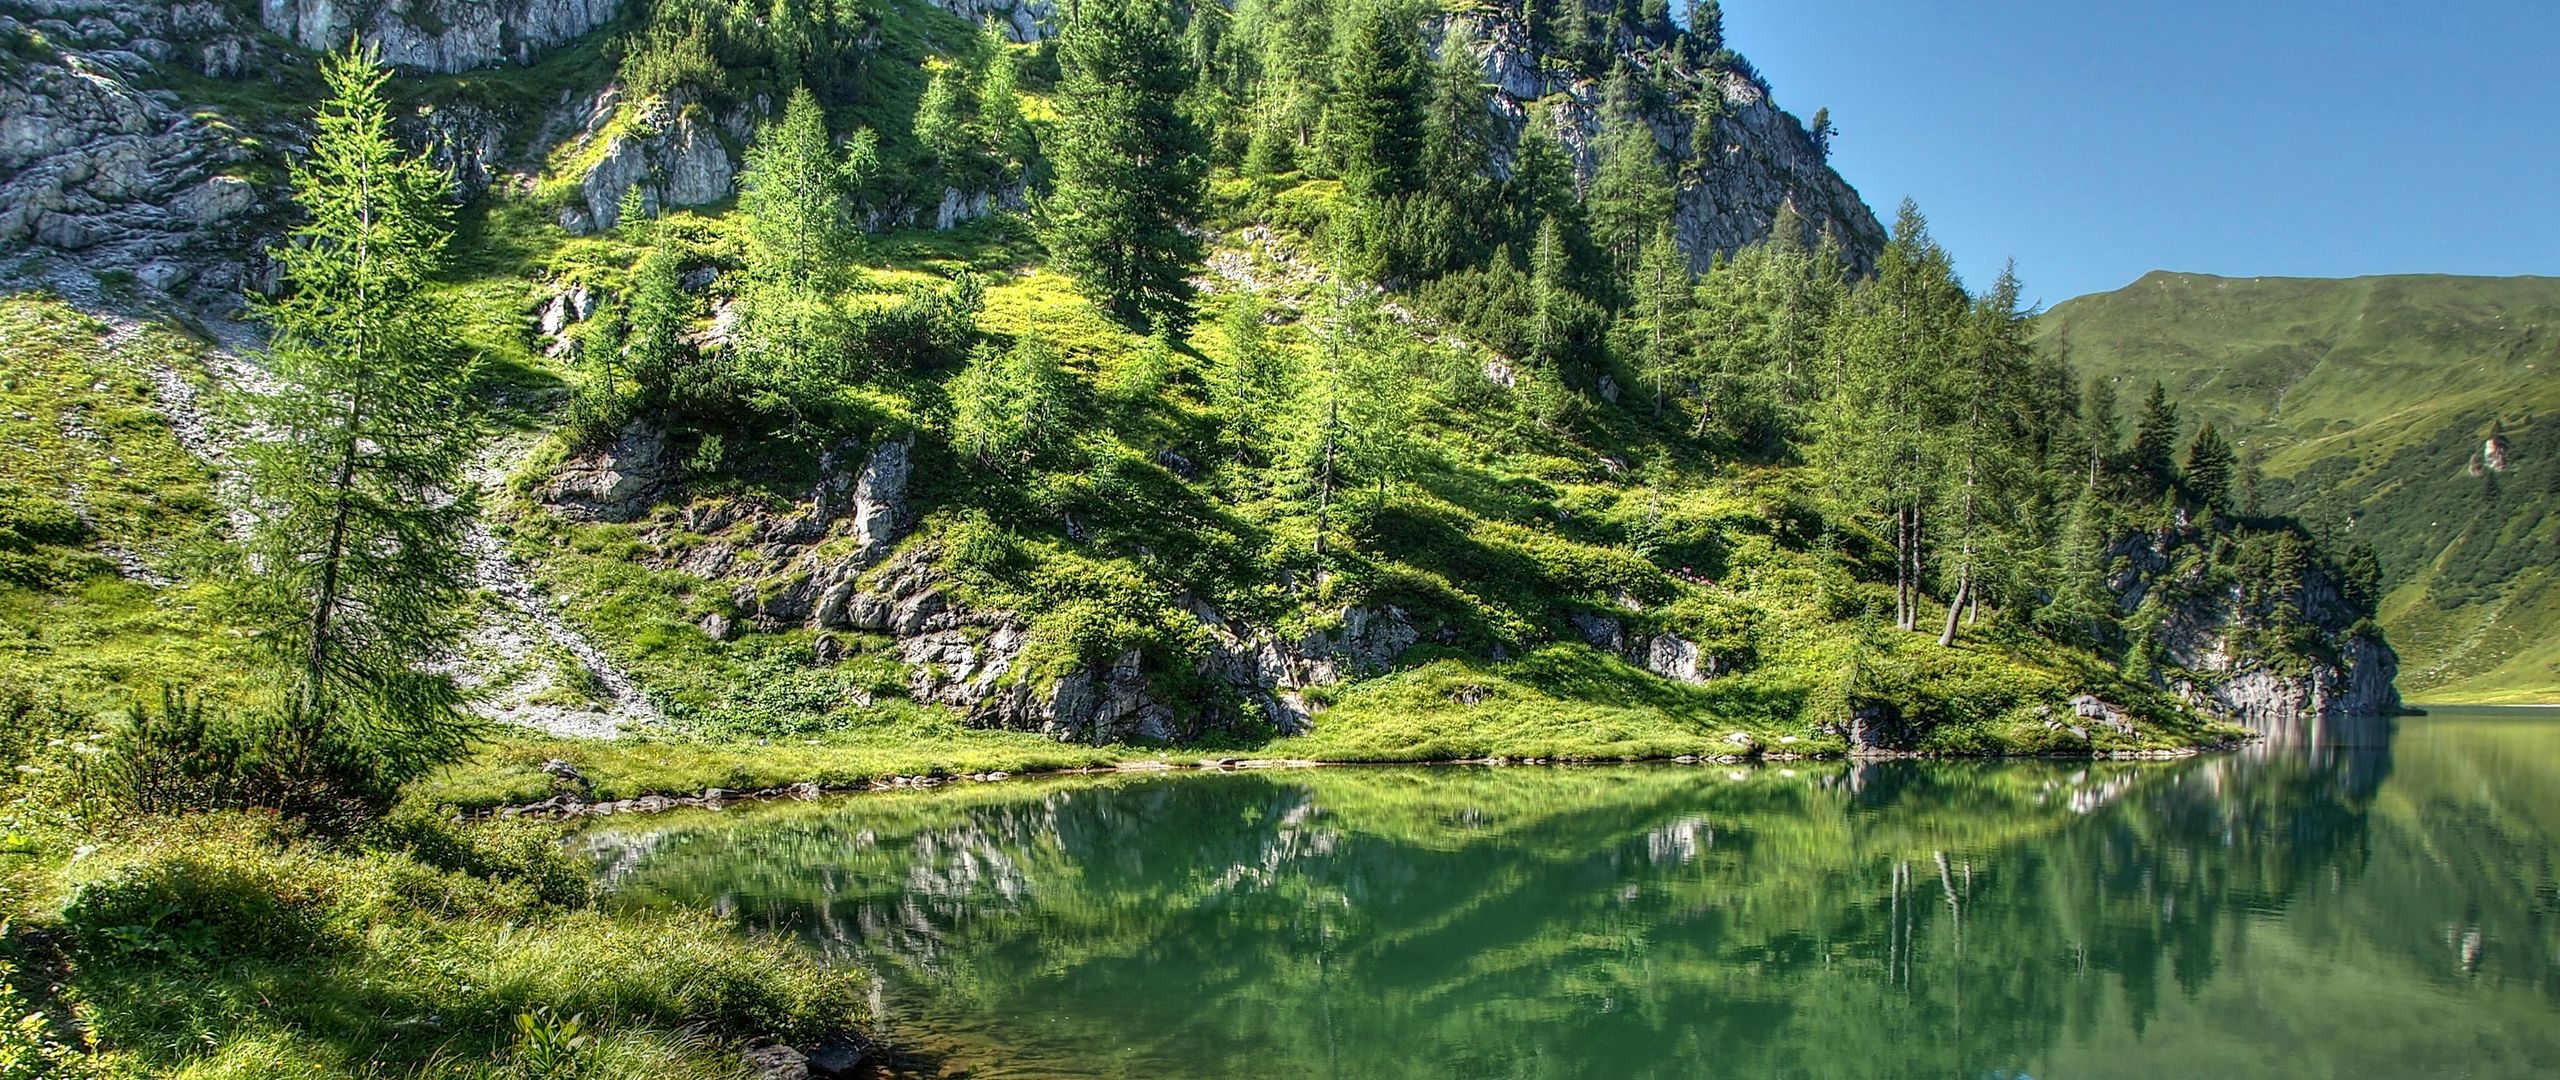 Download wallpaper 2560x1080 mountain, lake, landscape dual wide 1080p